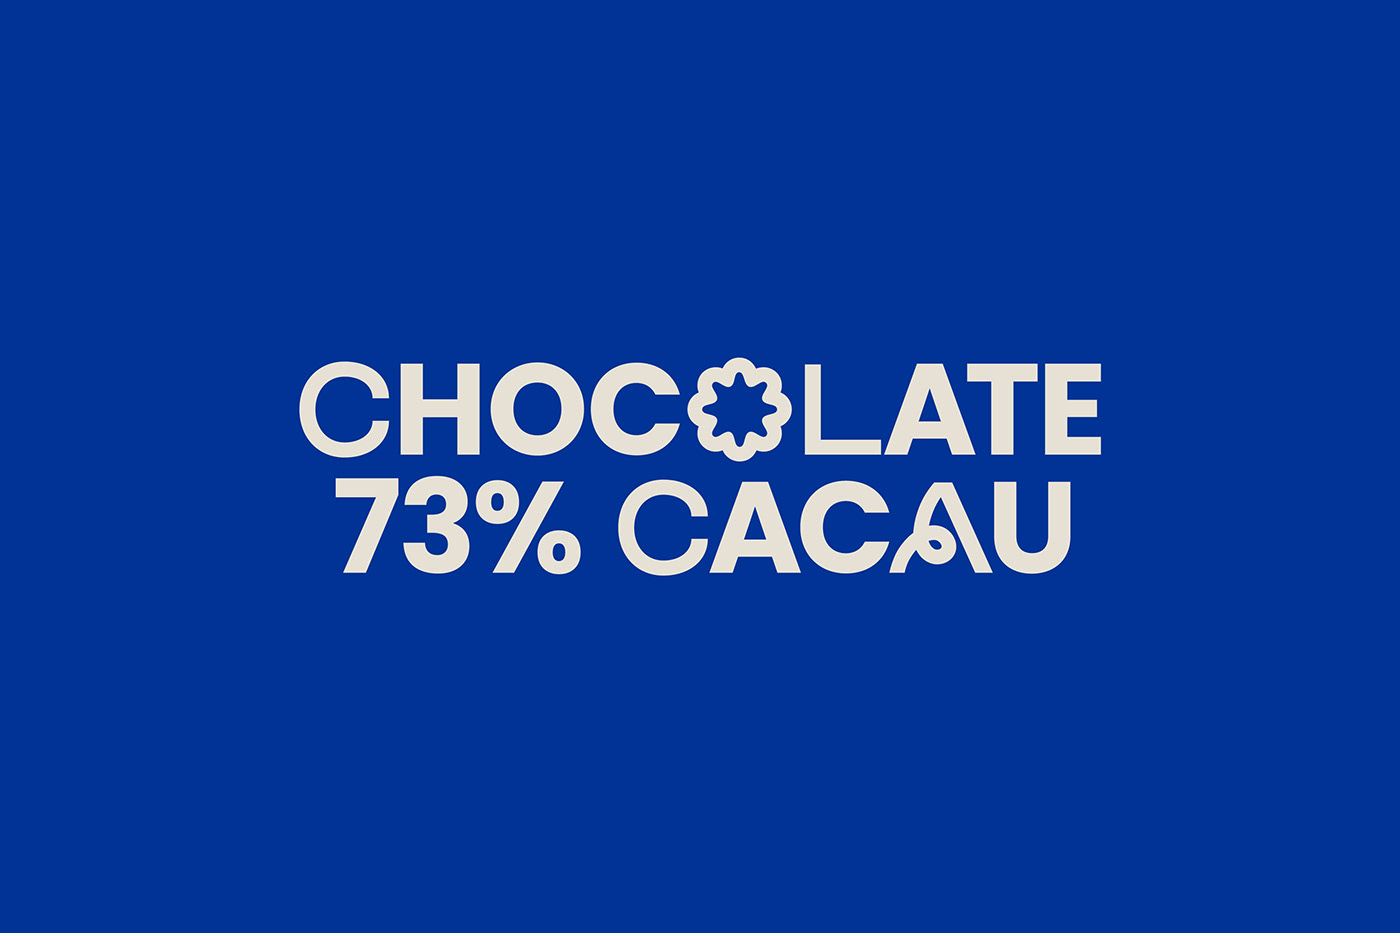 art chocolate digital illustration Illustrator logo Packaging vector